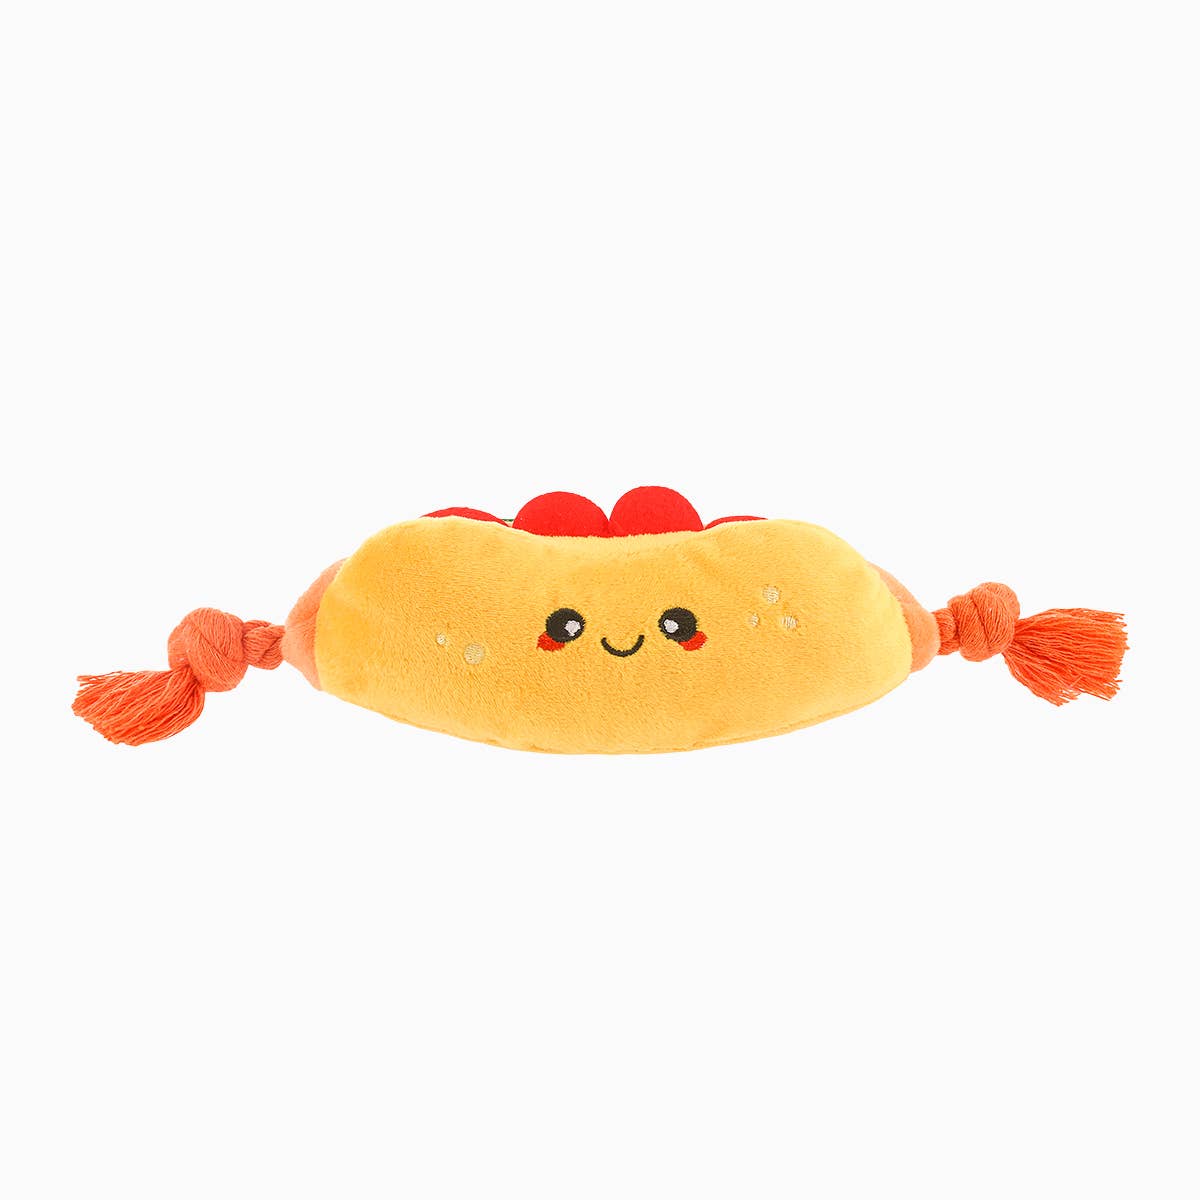 HugSmart - Food Party - Hot dog - Plyschleksak med pipljud & rep